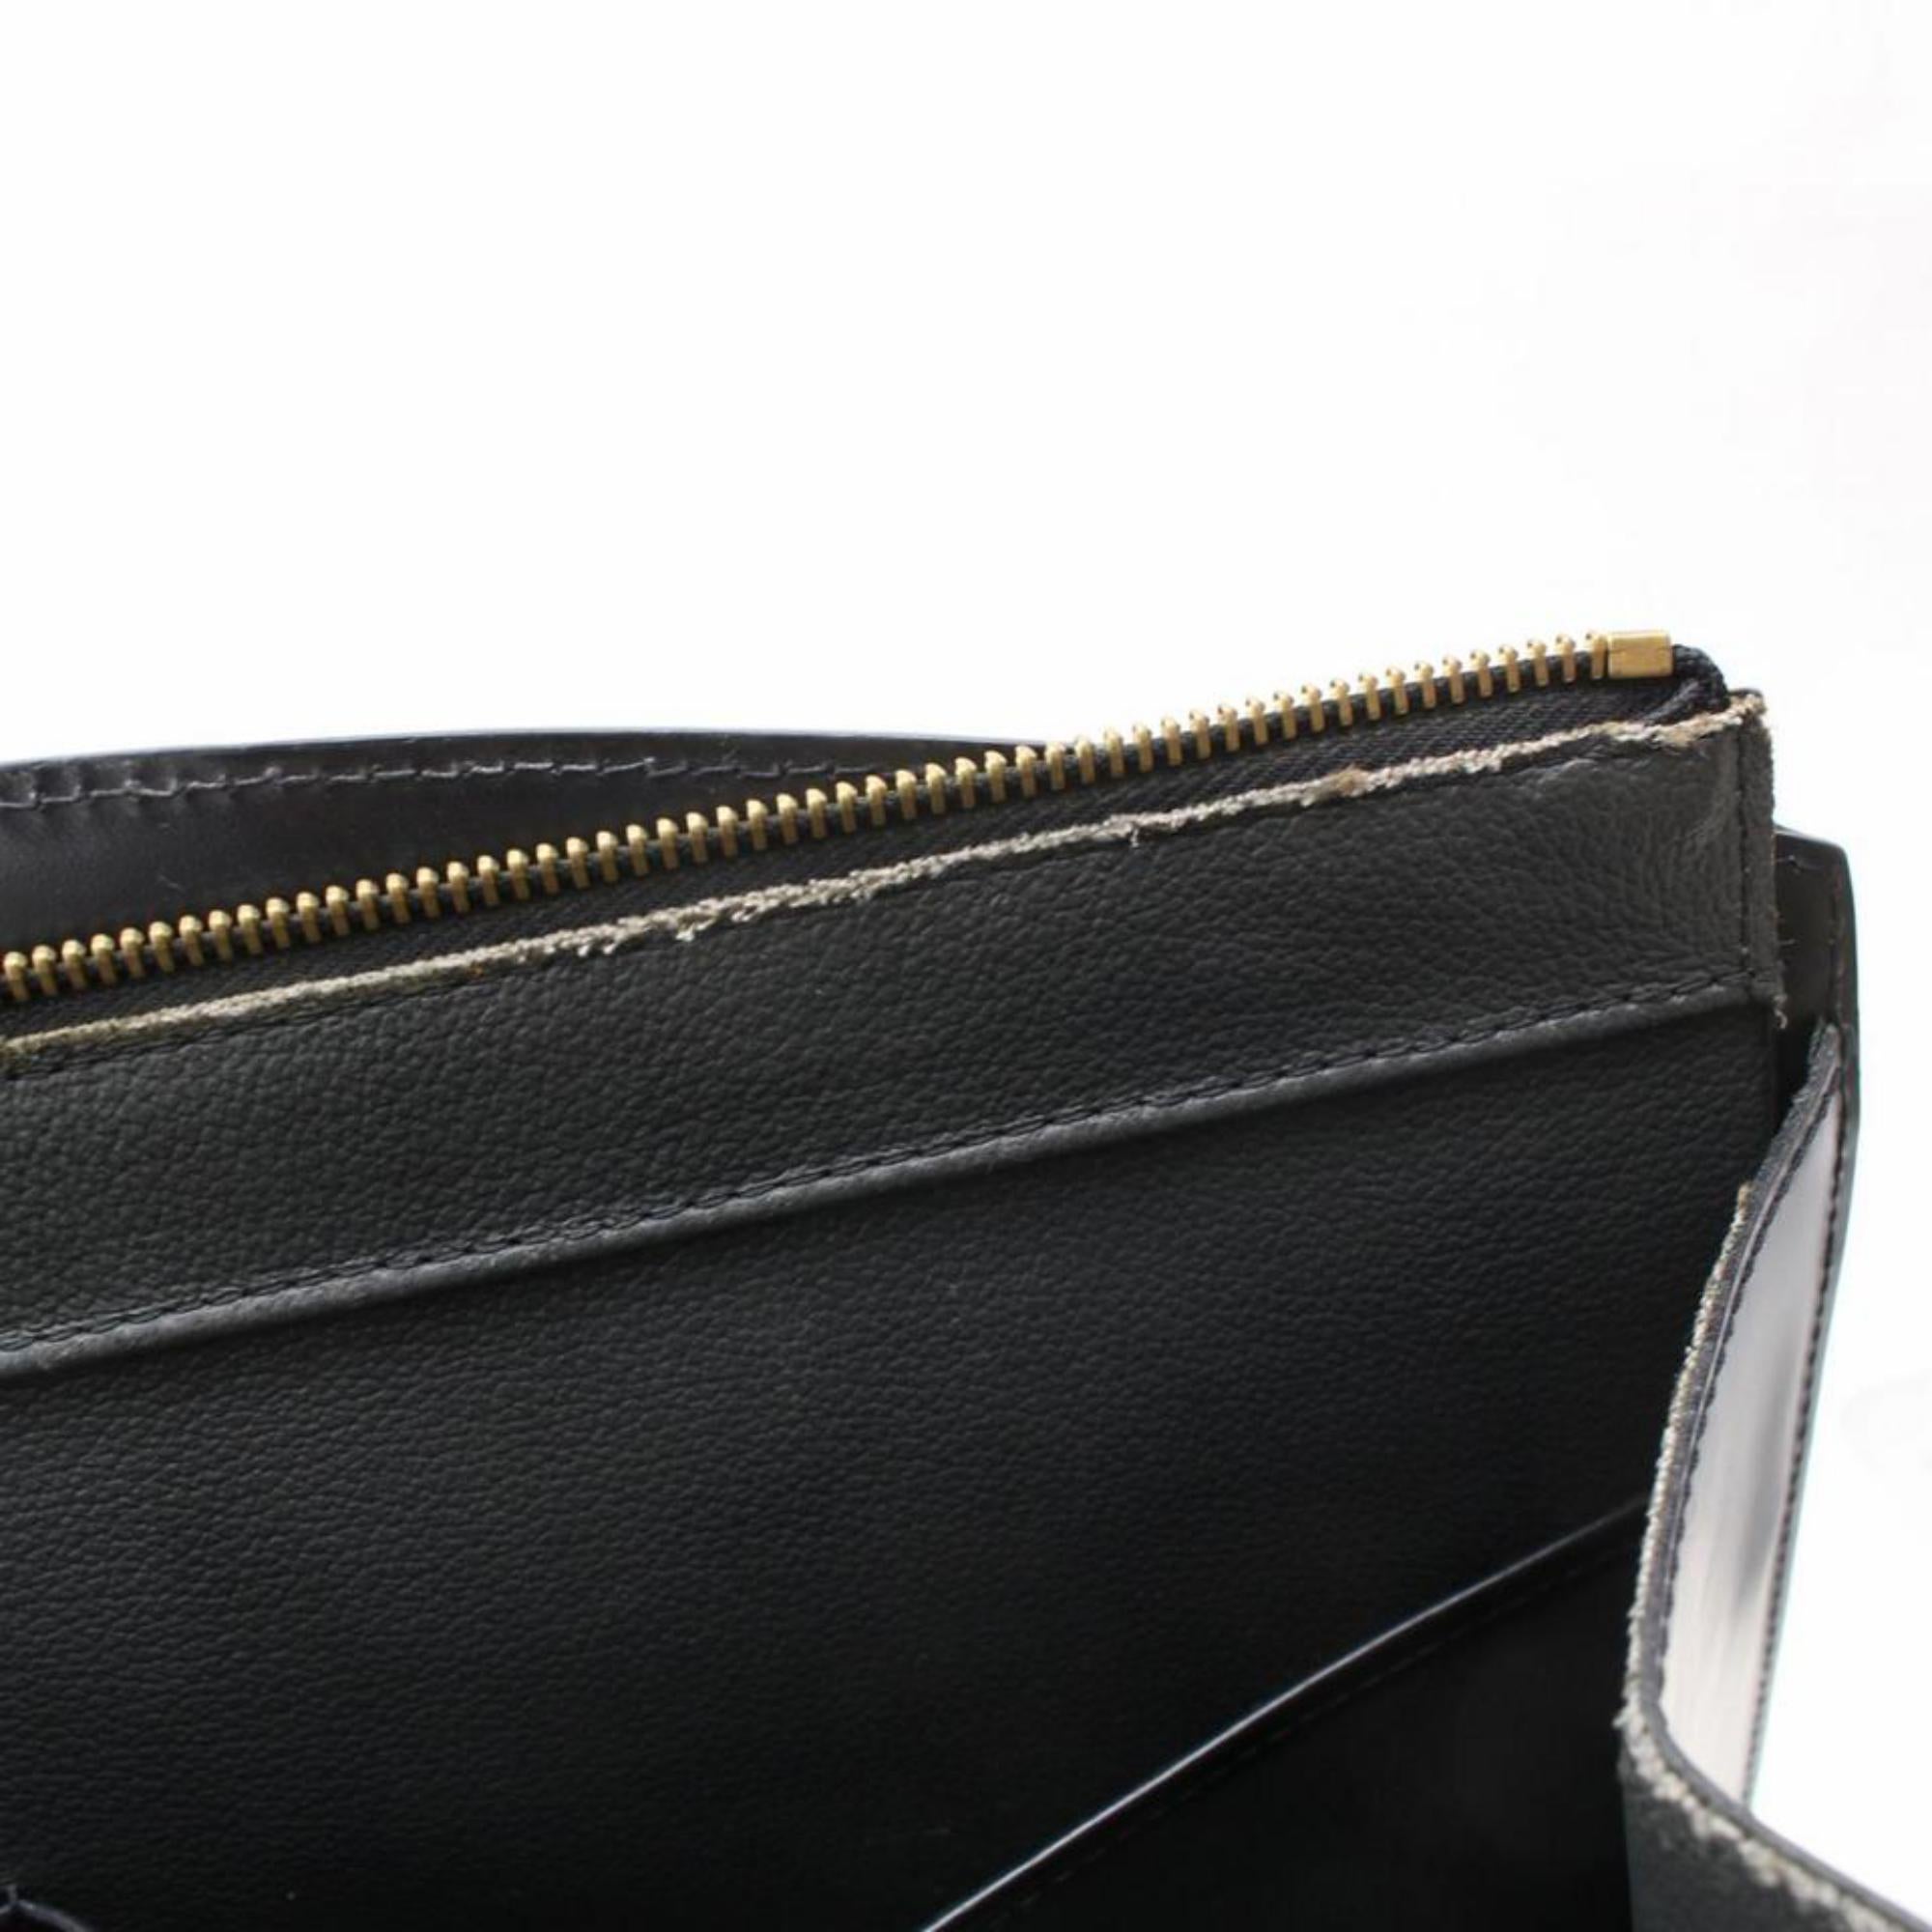 Louis Vuitton Riviera Vanity Case 868557 Black Leather Satchel For Sale 5